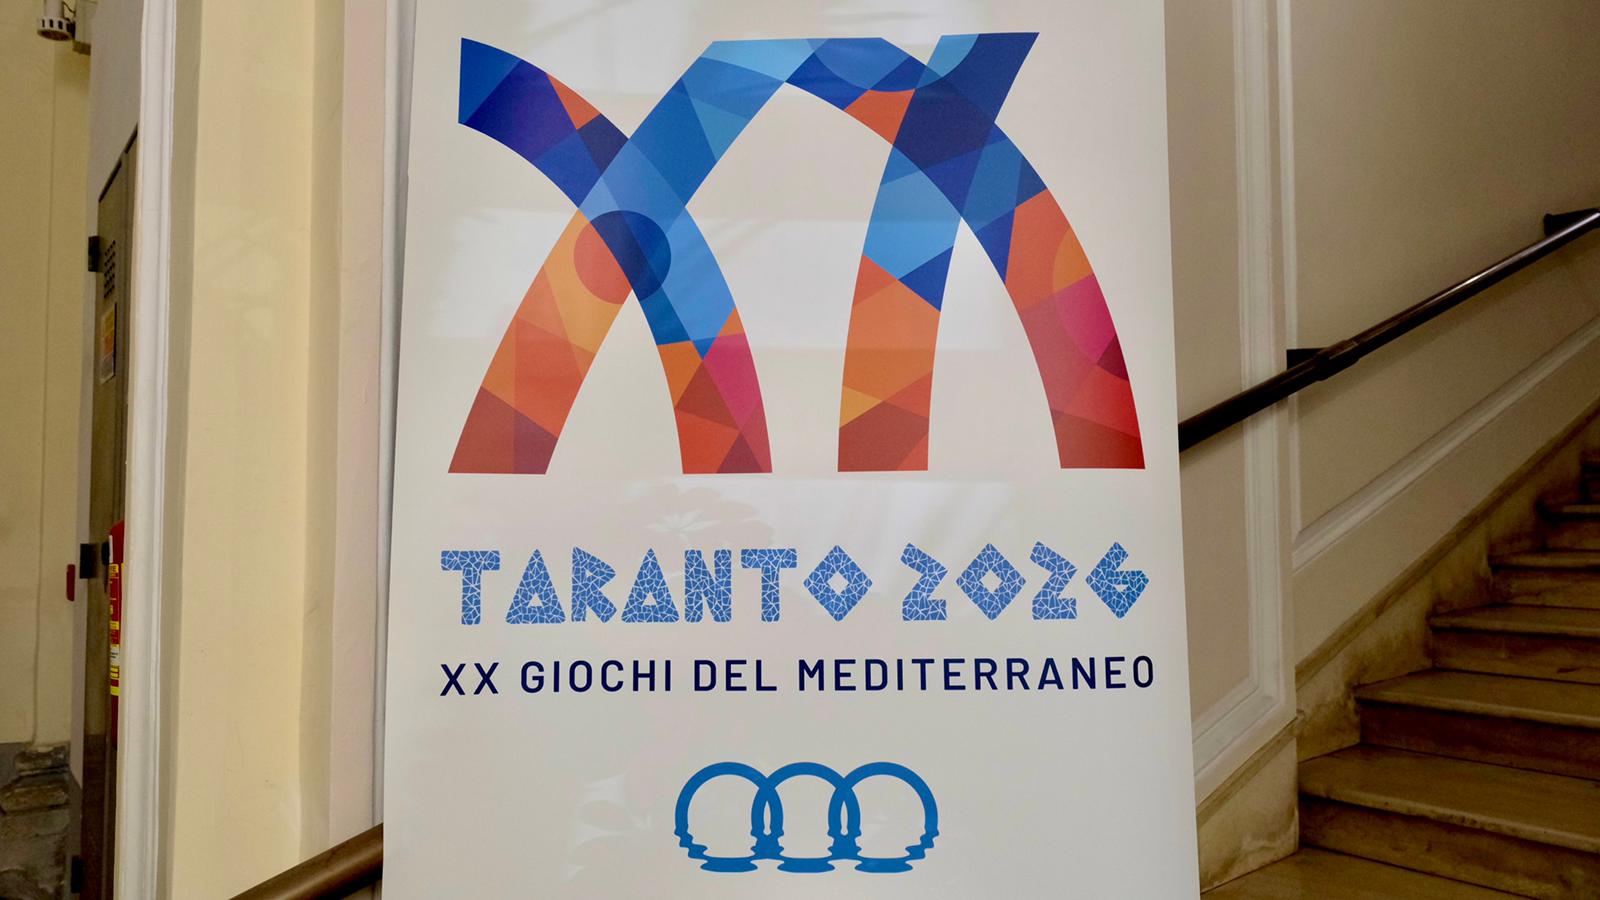 Galleria Taranto2026: la XX edizione dei Giochi del Mediterraneo come occasione per valorizzare Taranto e il suo antico ruolo da protagonista nell’area mediterranea - Diapositiva 2 di 20